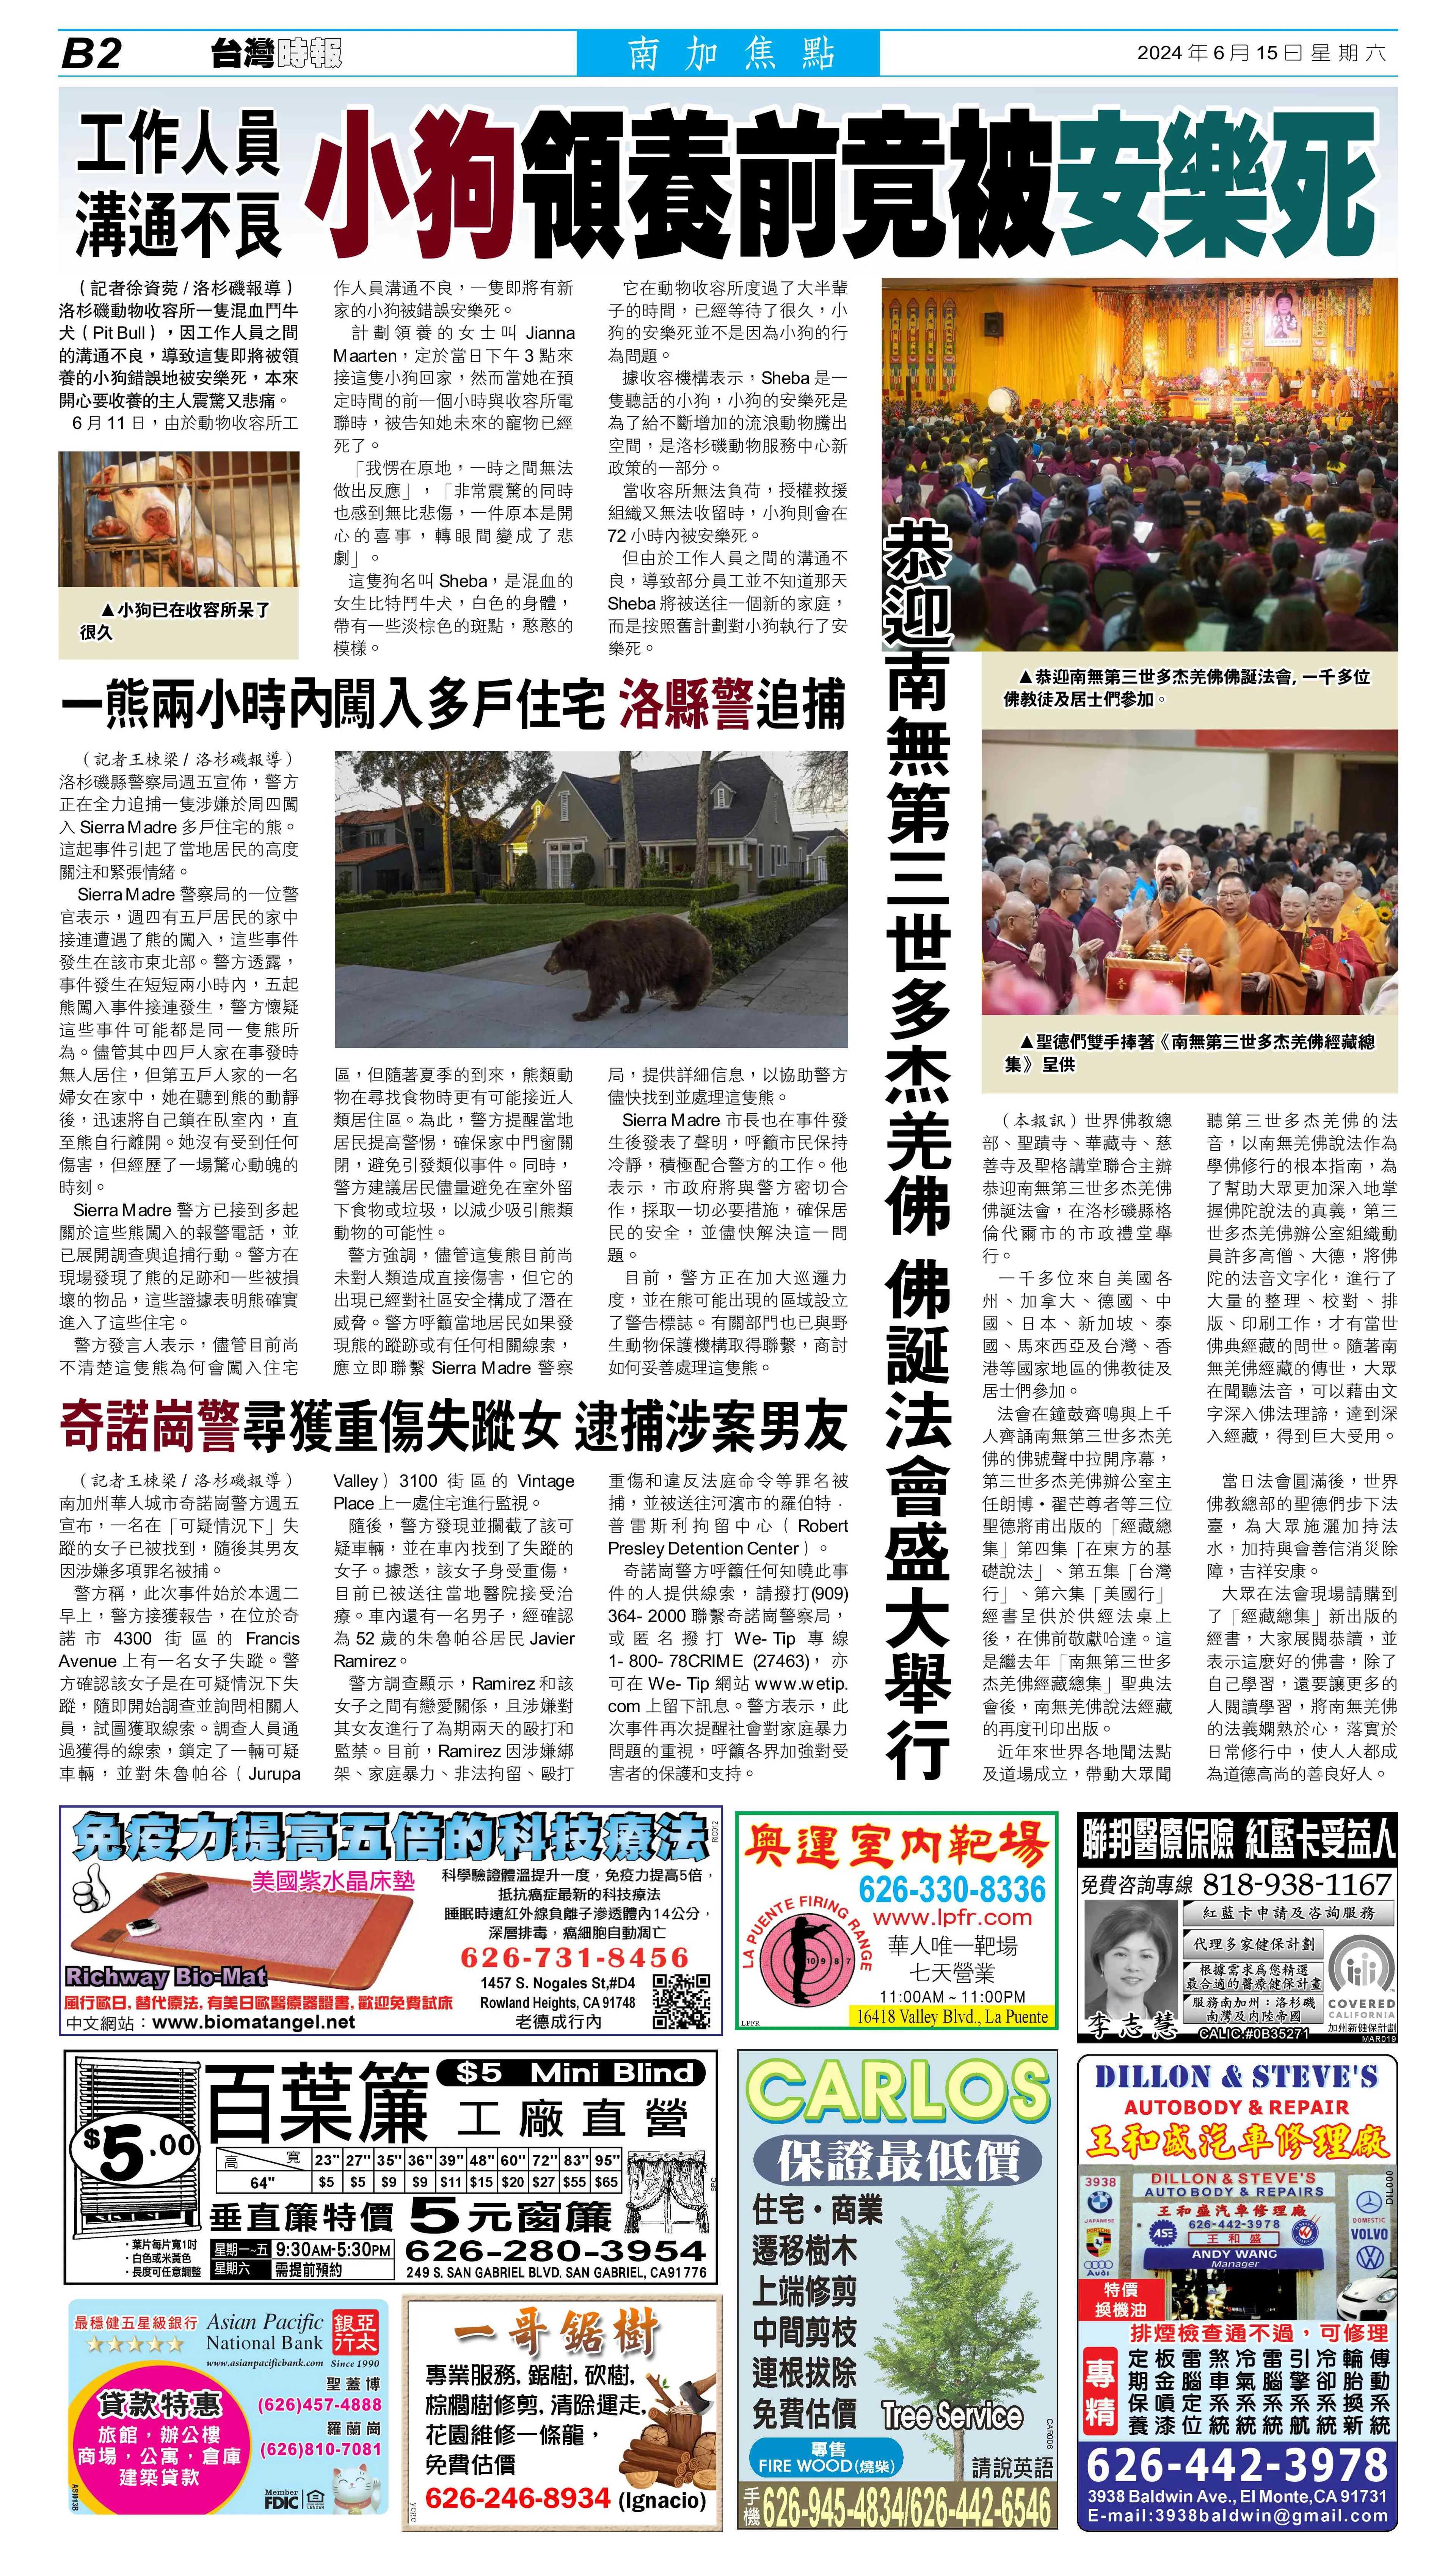 《台湾时报》p18：2024 年 6 月 15 日：恭迎南无第三世多杰羌佛佛诞法会盛大举行